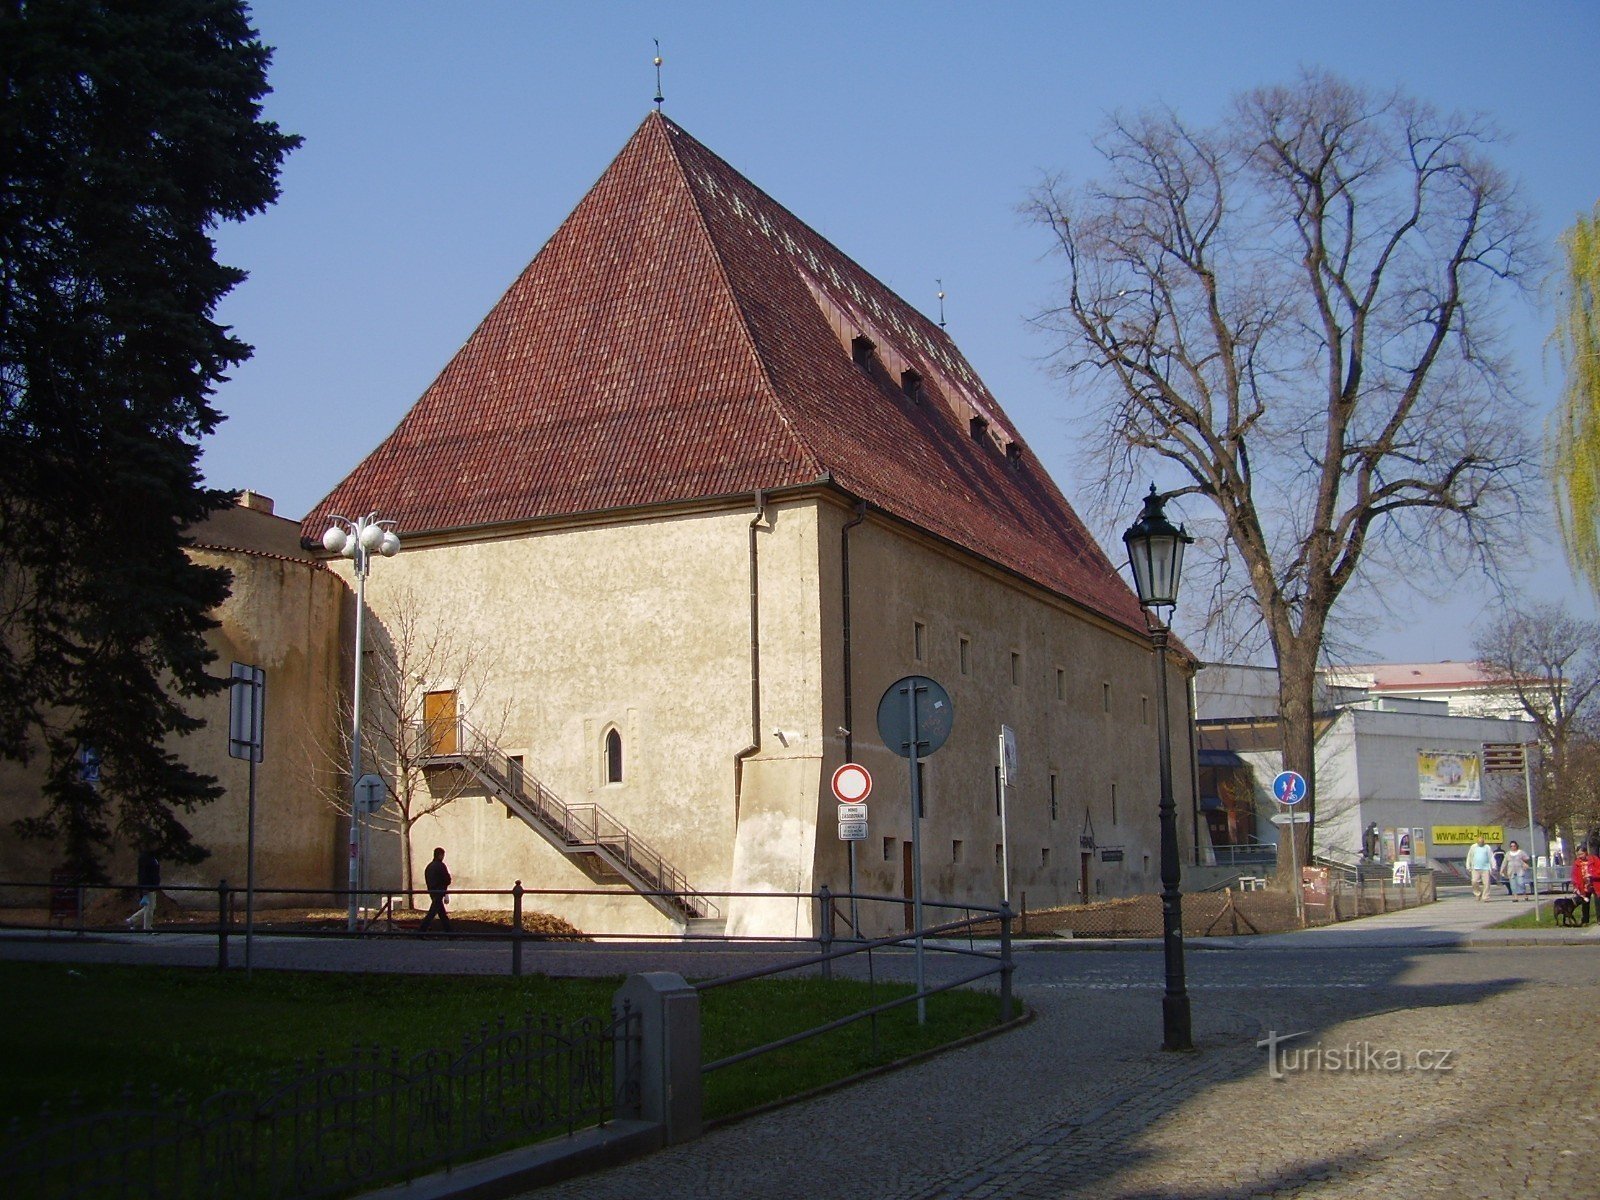 La città reale di Litoměřice